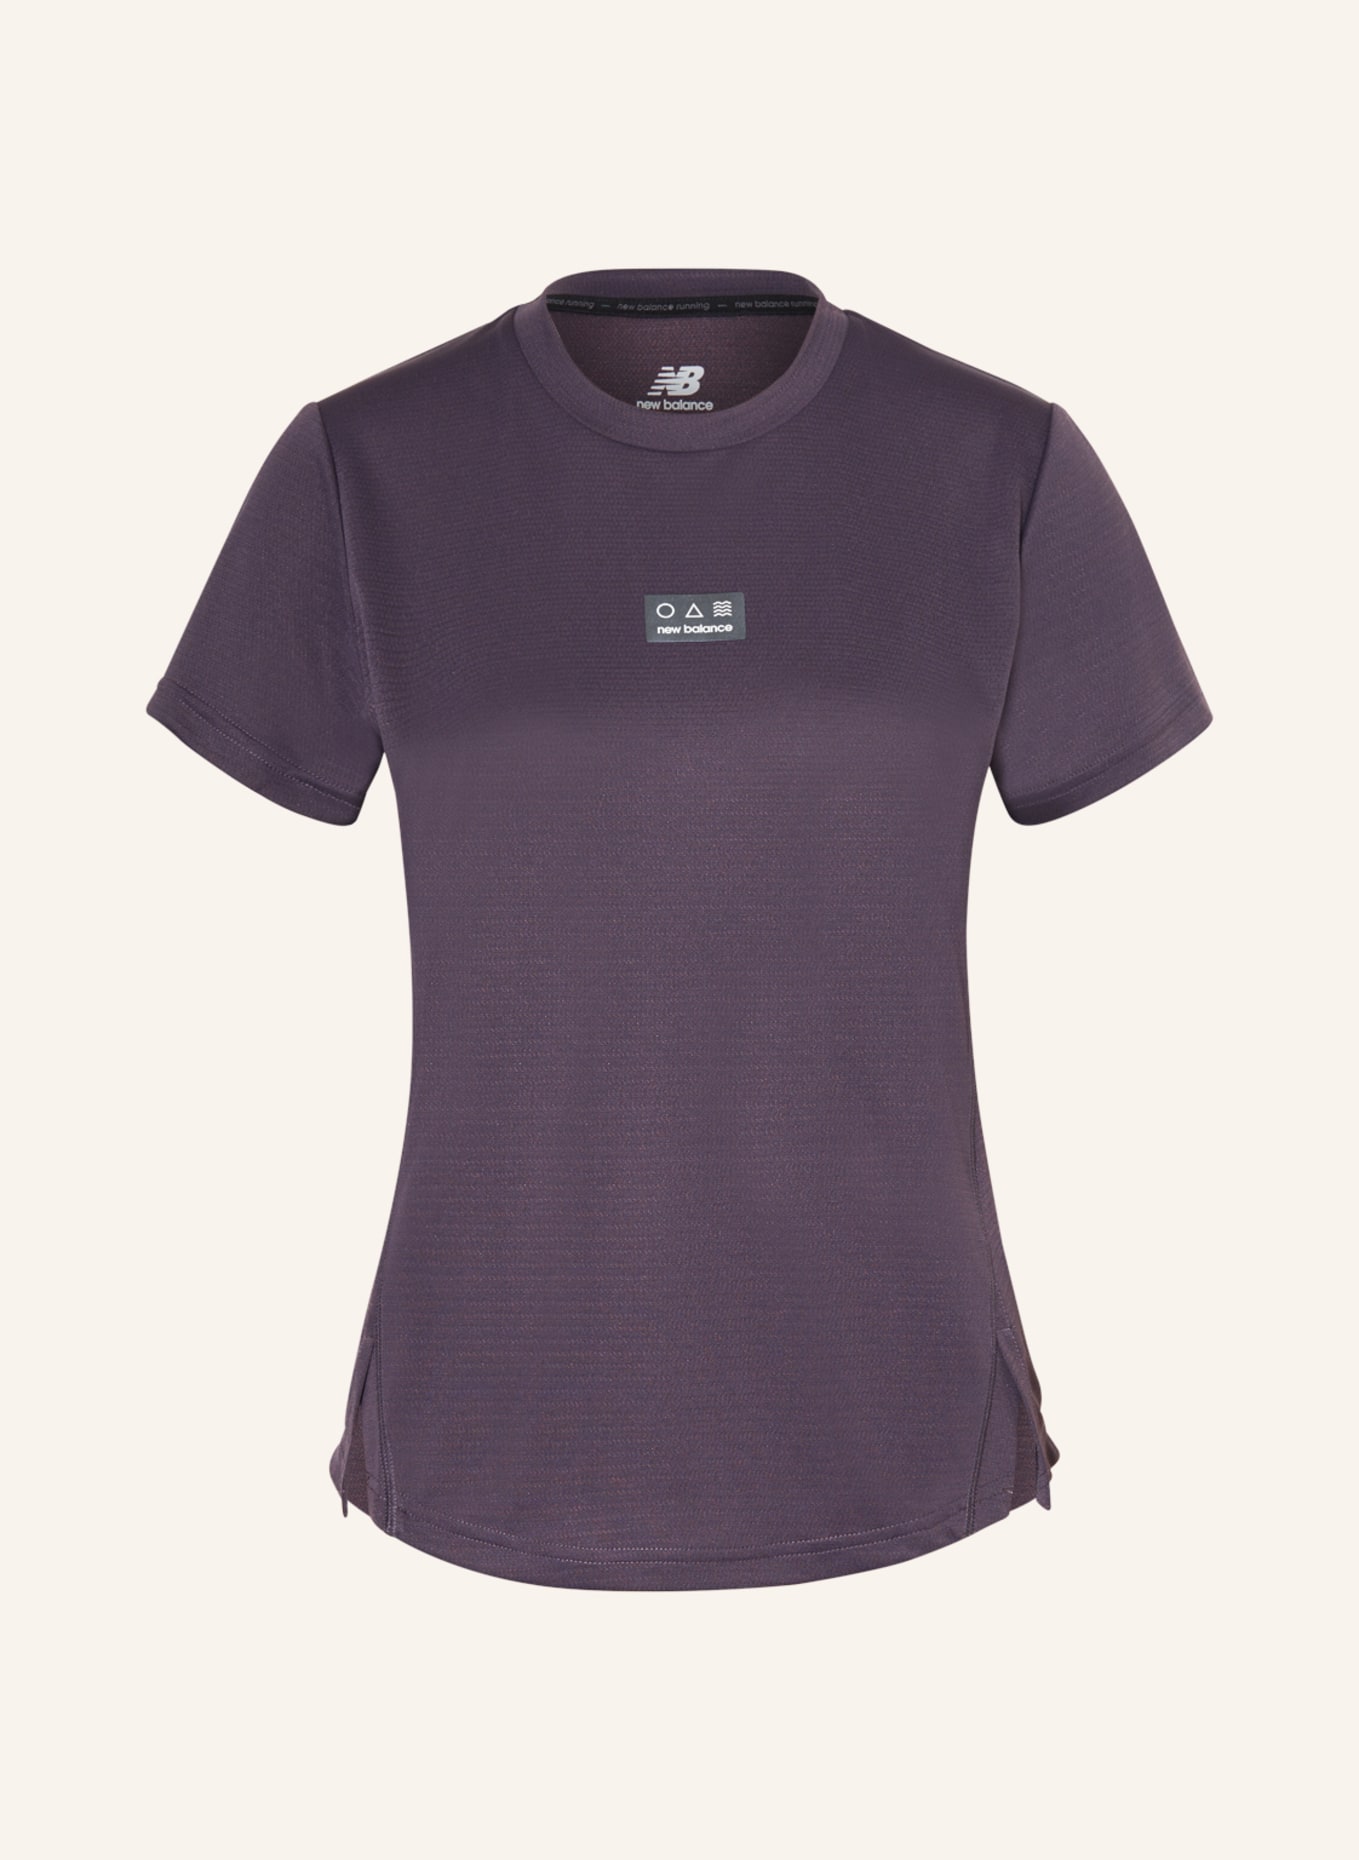 new balance Running shirt IMPACT RUN, Color: DARK PURPLE (Image 1)